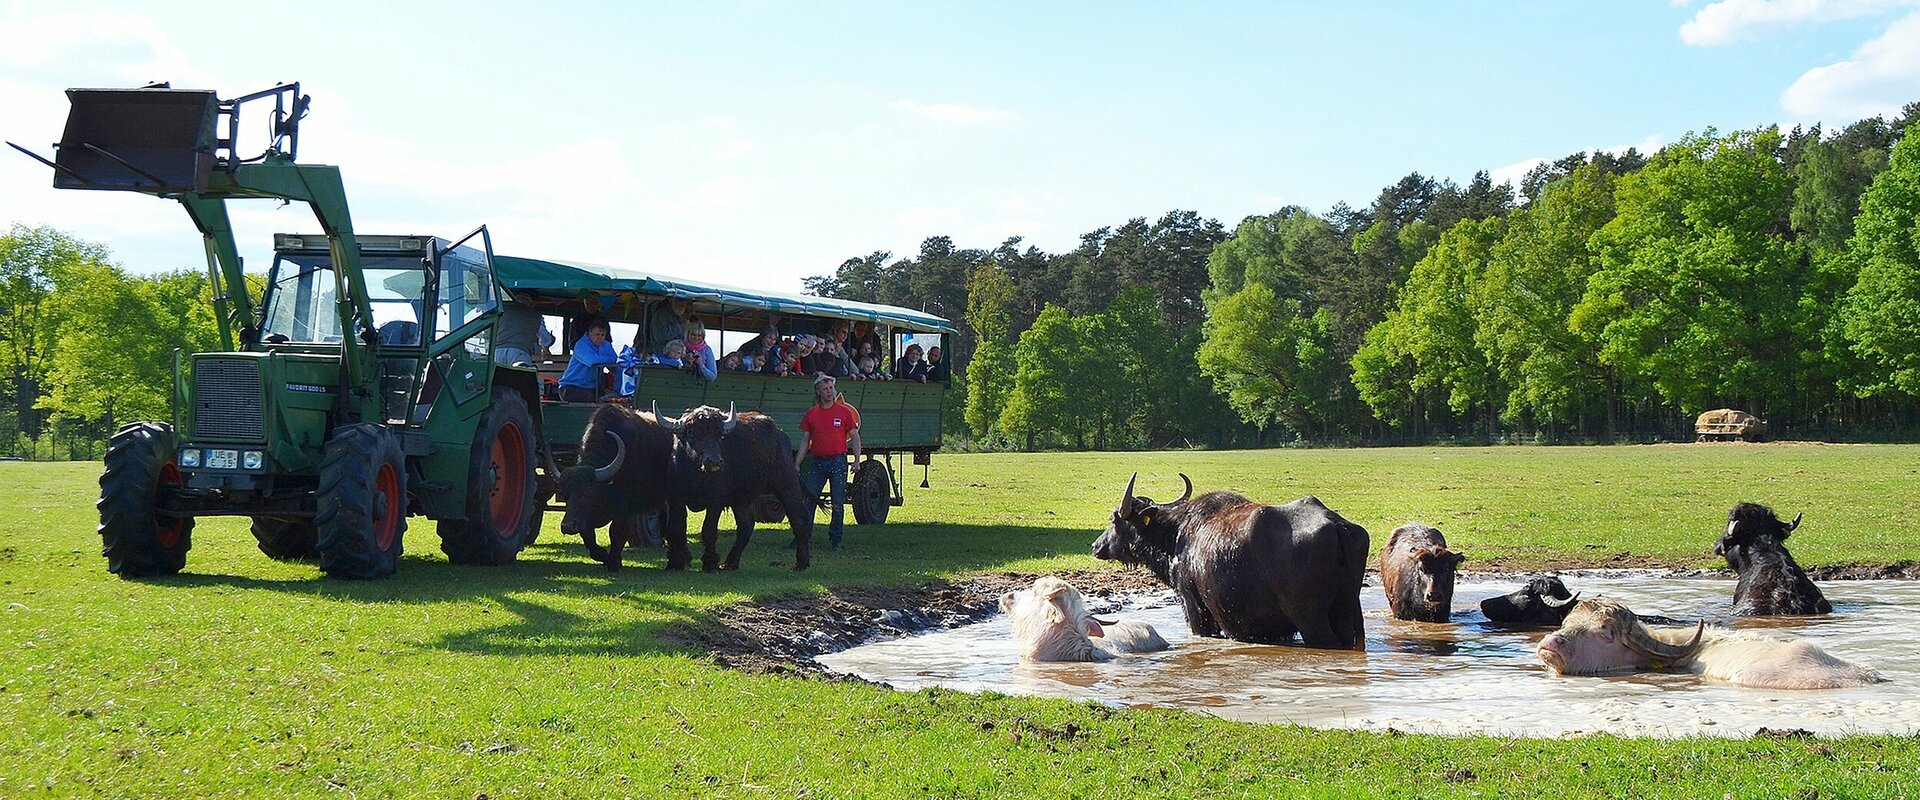 Grüner Traktor mit einem Personenanhänger auf einer Wiese stehend. Rechts im Bild ein Wasserloch mit mehreren Wasserbüffeln, Vor Traktor und Anhänger mehrere Menschen, die sich die Tiere anschauen.